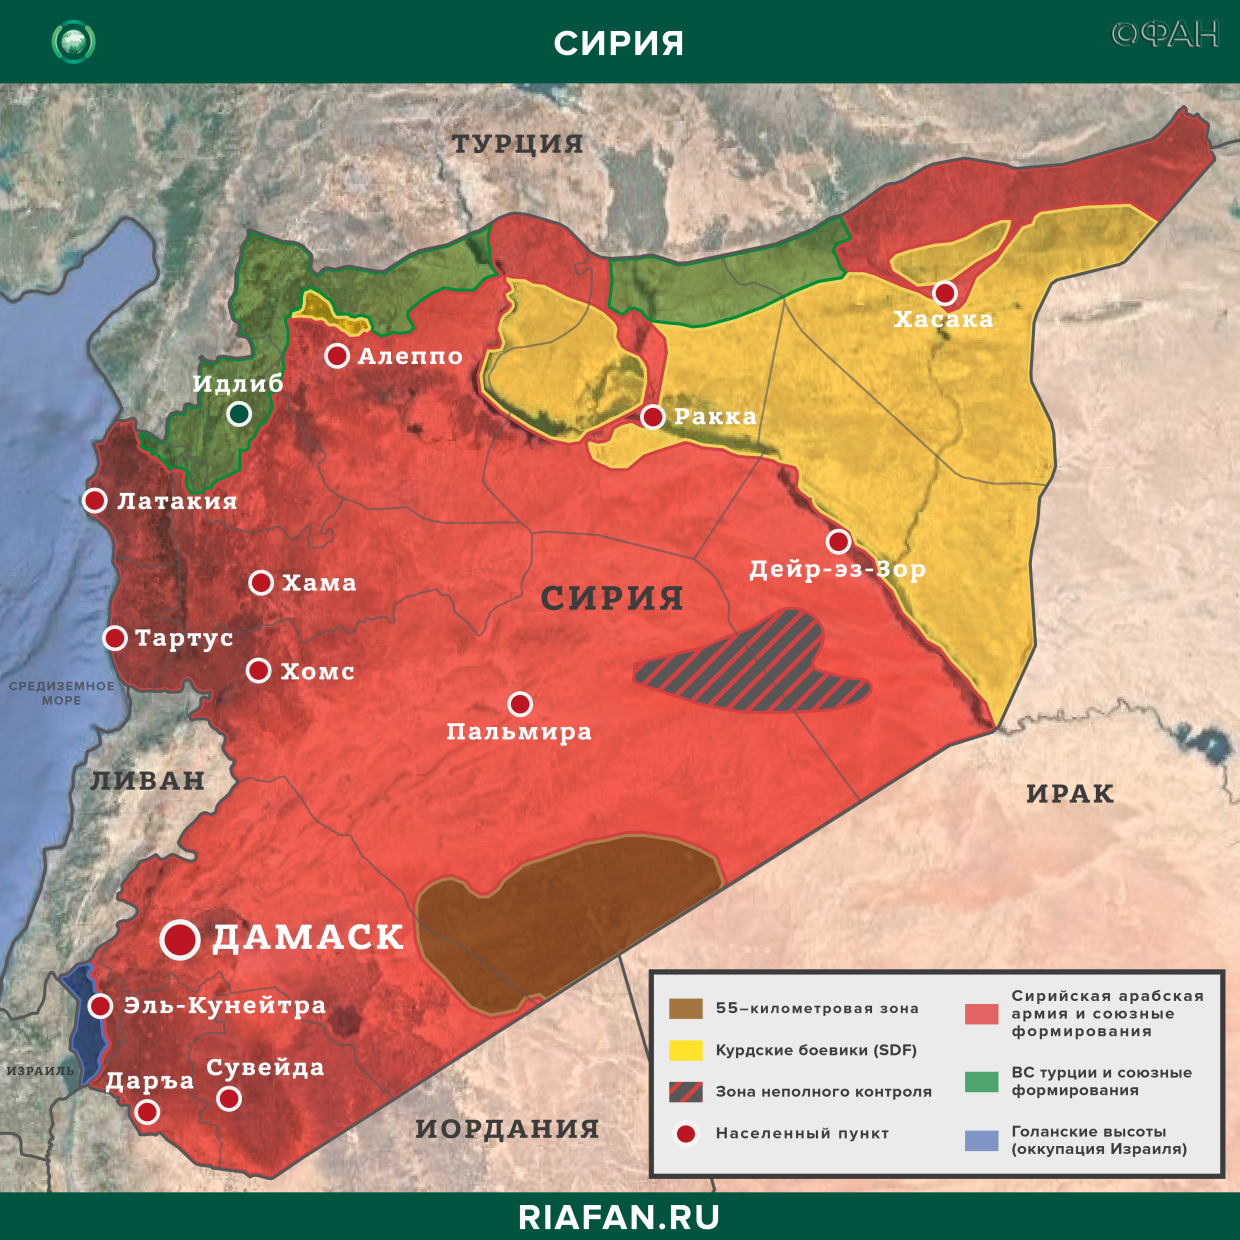 Noticias de Siria 5 Septiembre 12.30: обстрелы SDF в Ракке привели к ранению трех сирийцев